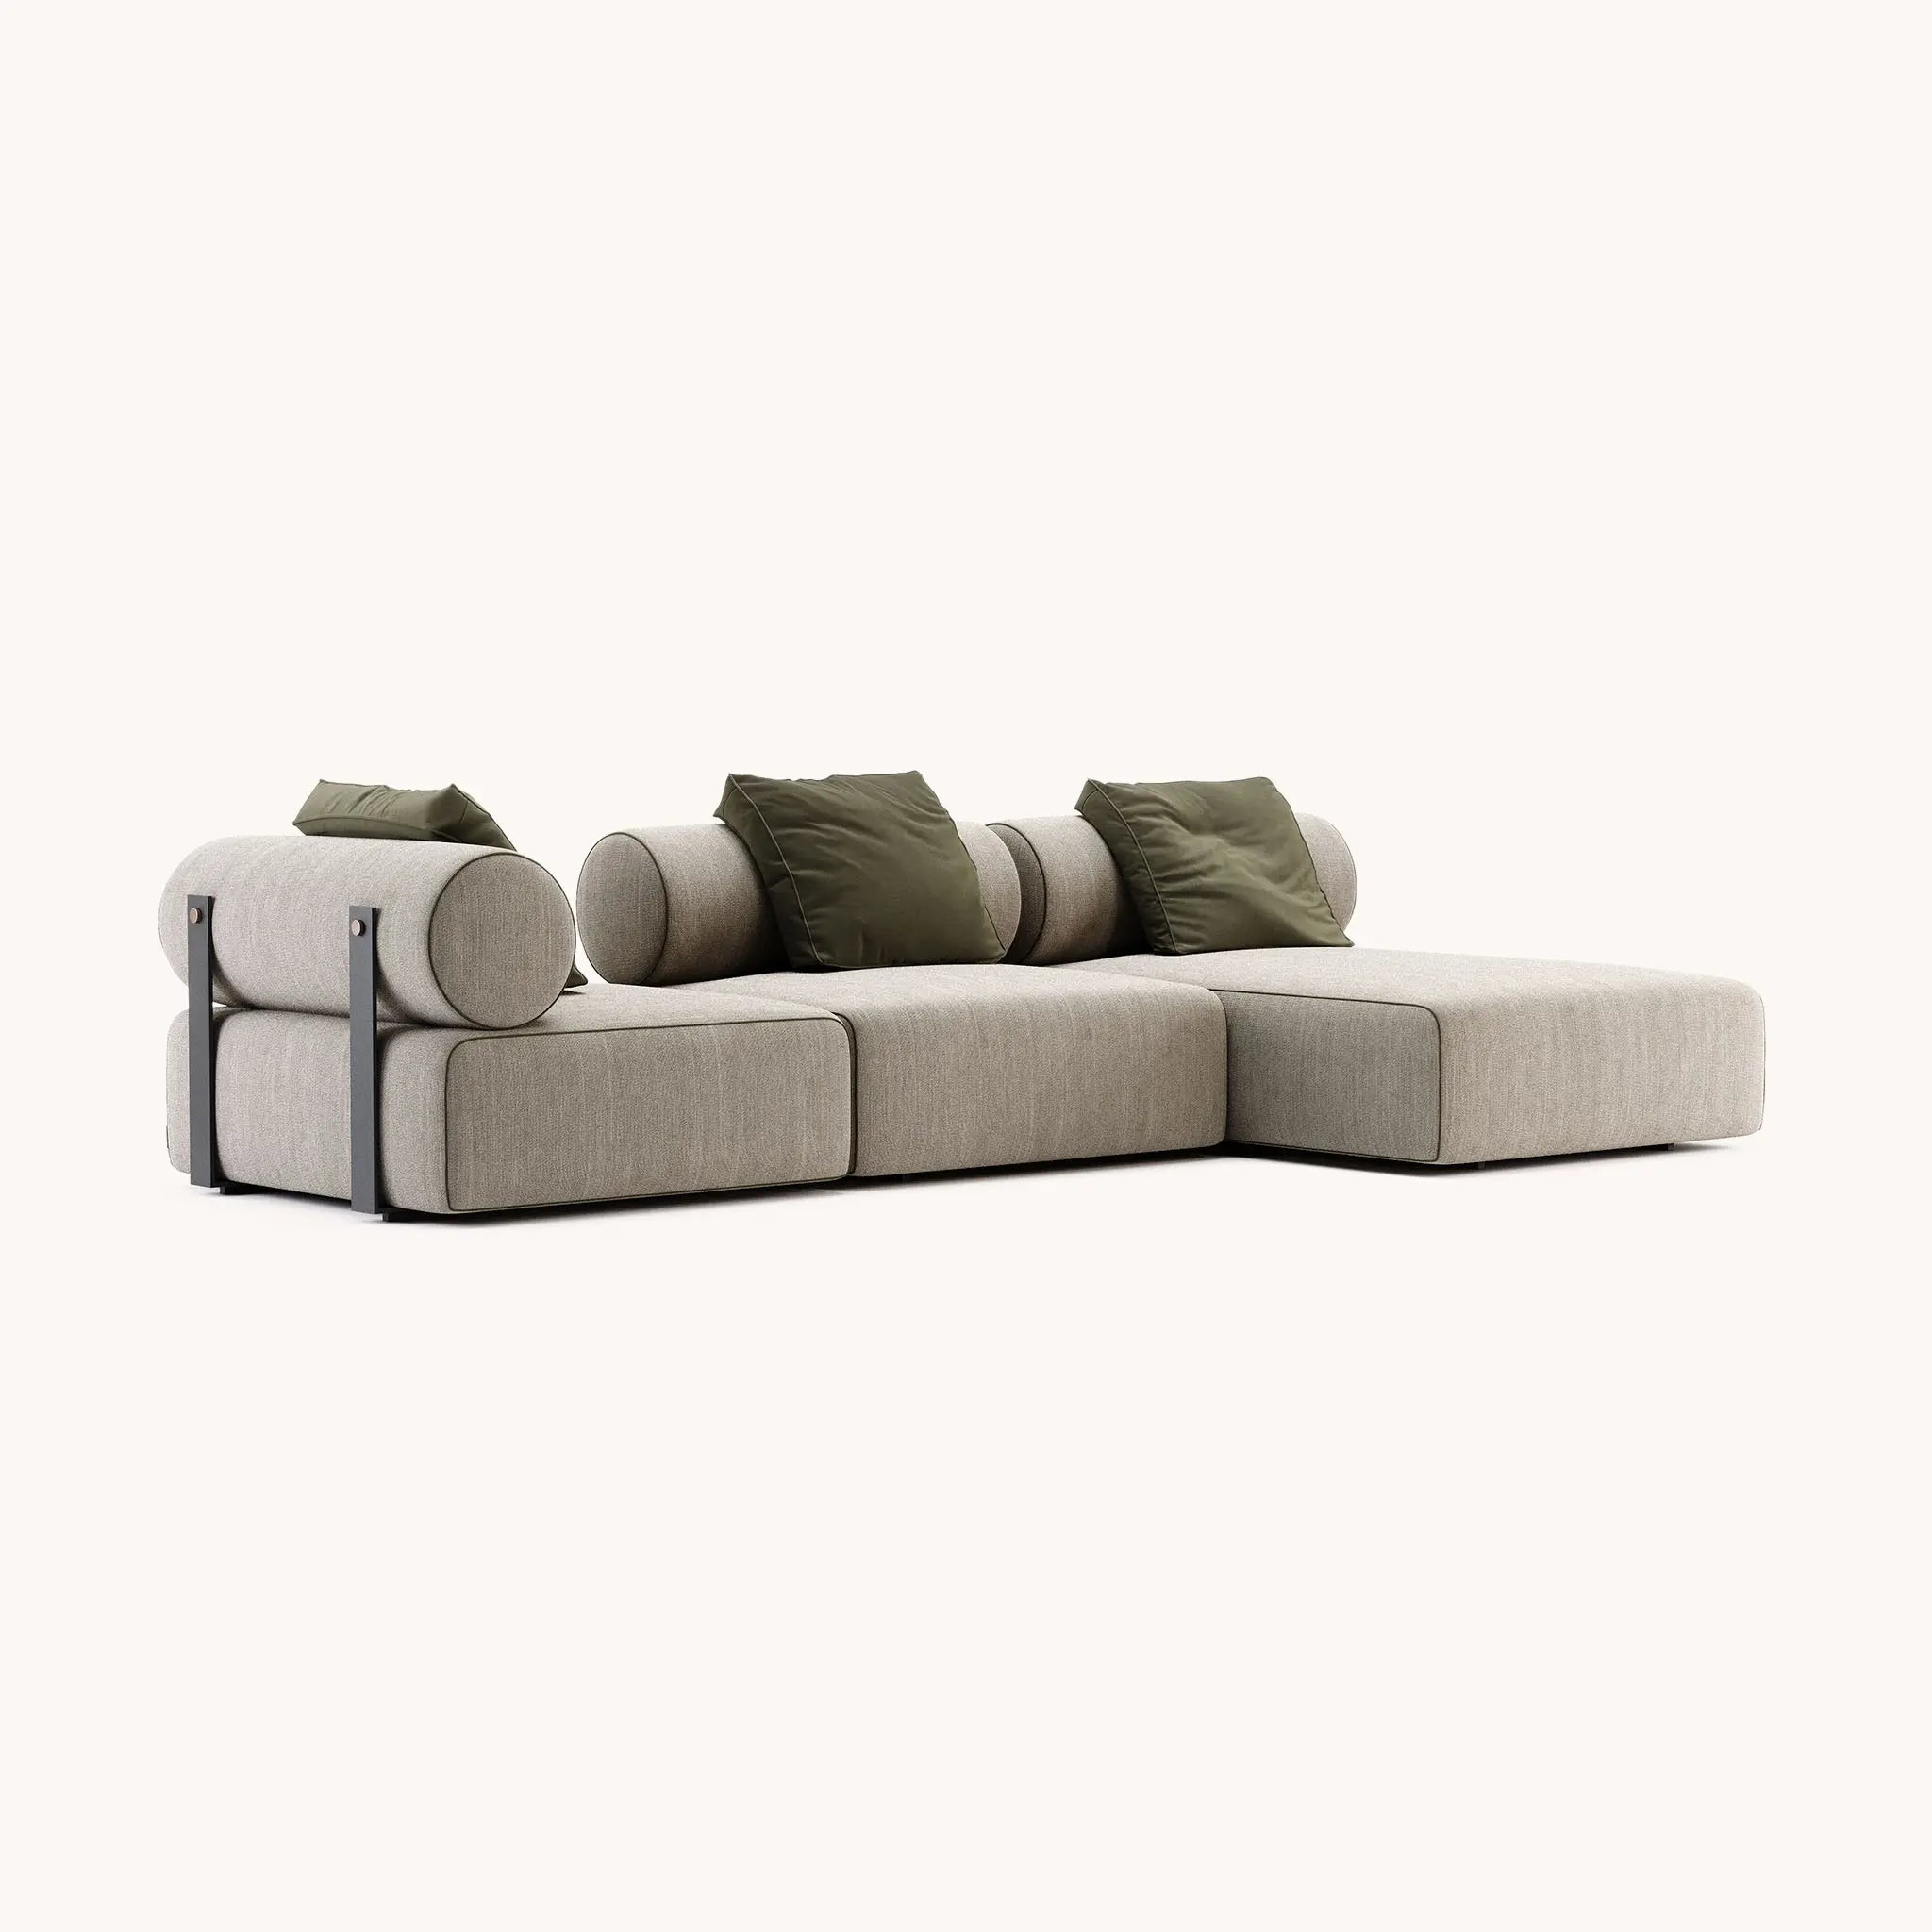 Shinto modular sofa